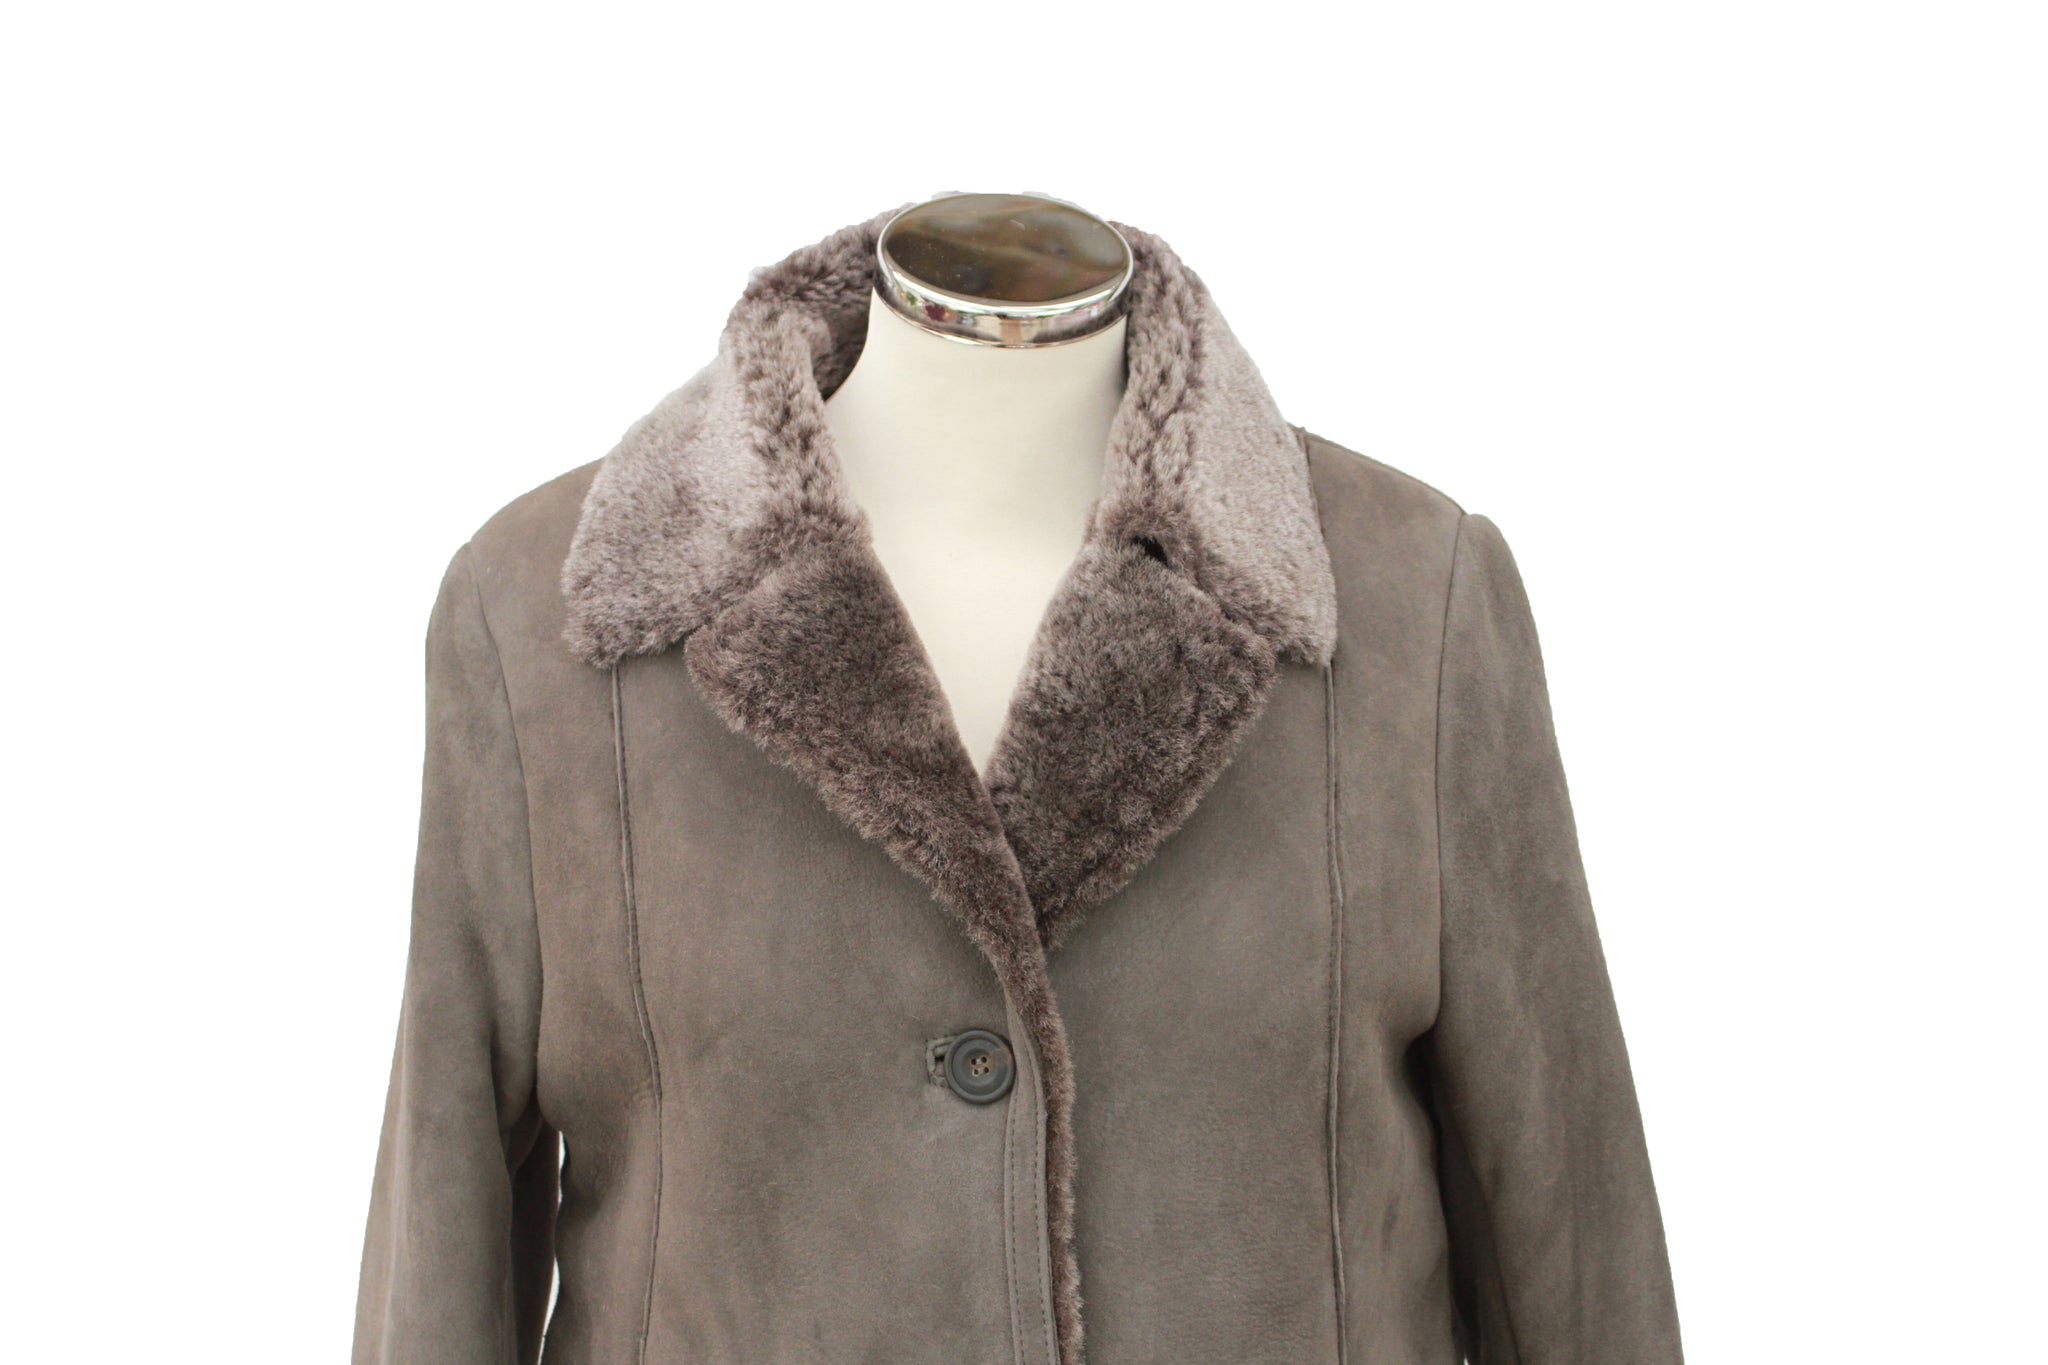 Women's Button Fastening Suede Leather Sheepskin Jacket in Vizon Grey